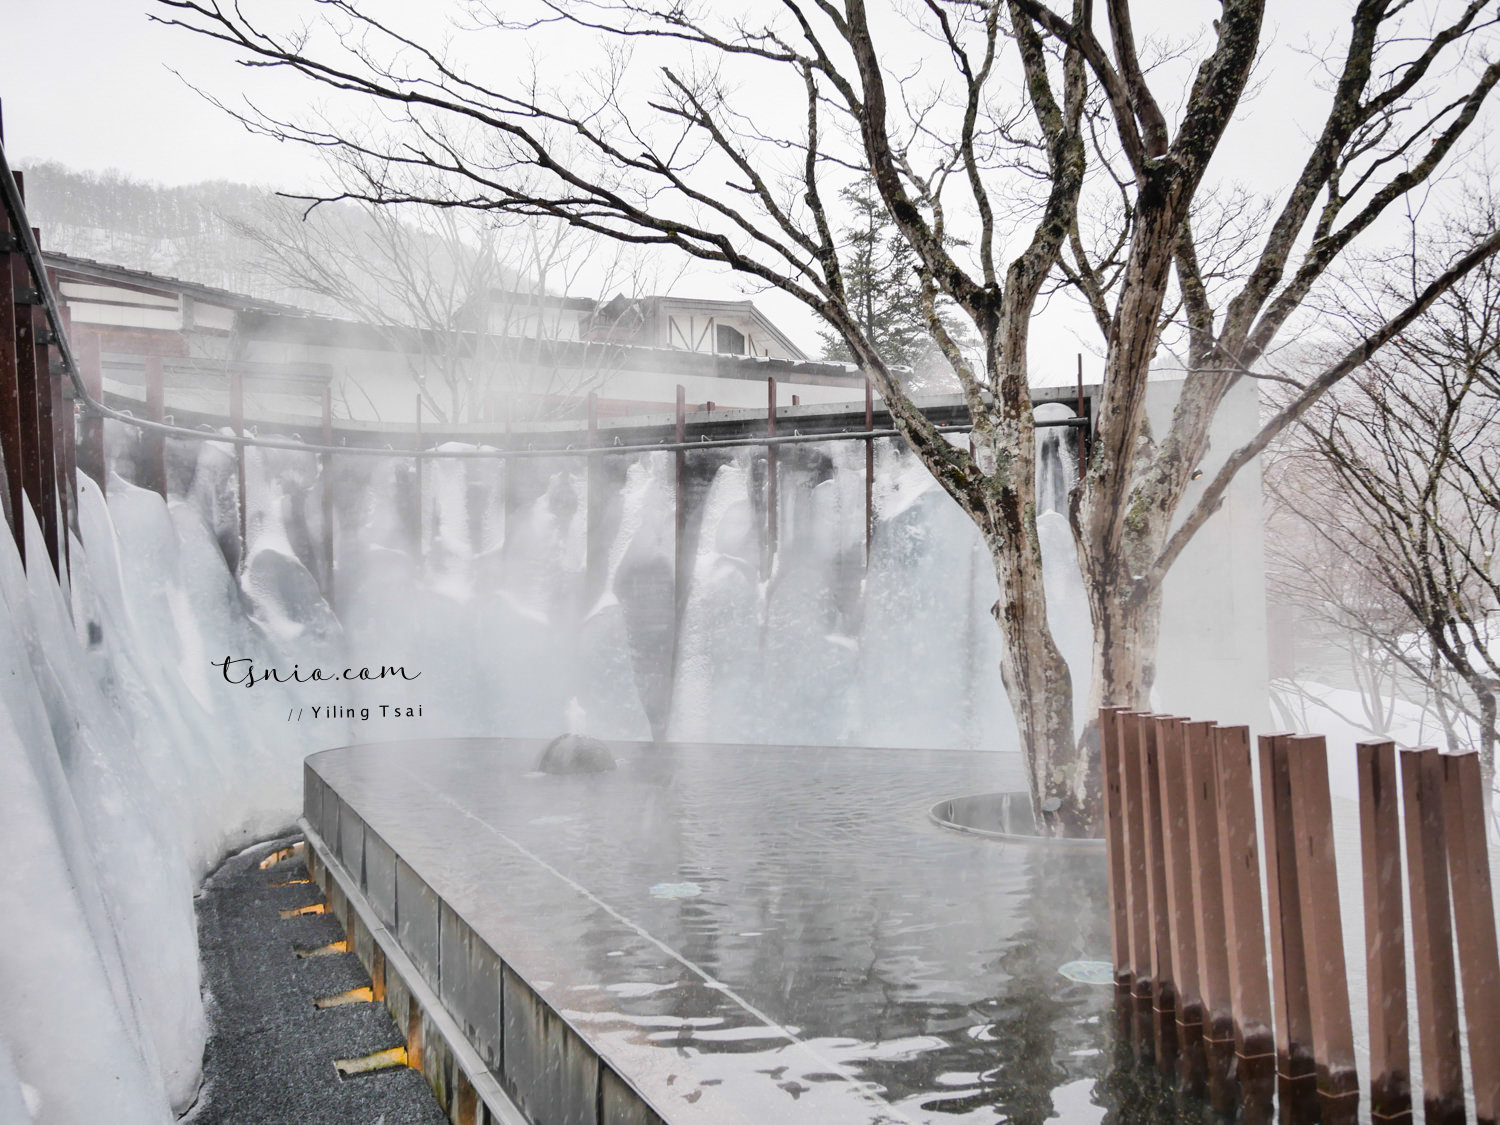 日本青森住宿 星野集團奧入瀨溪流飯店 超美冬季冰瀑之湯